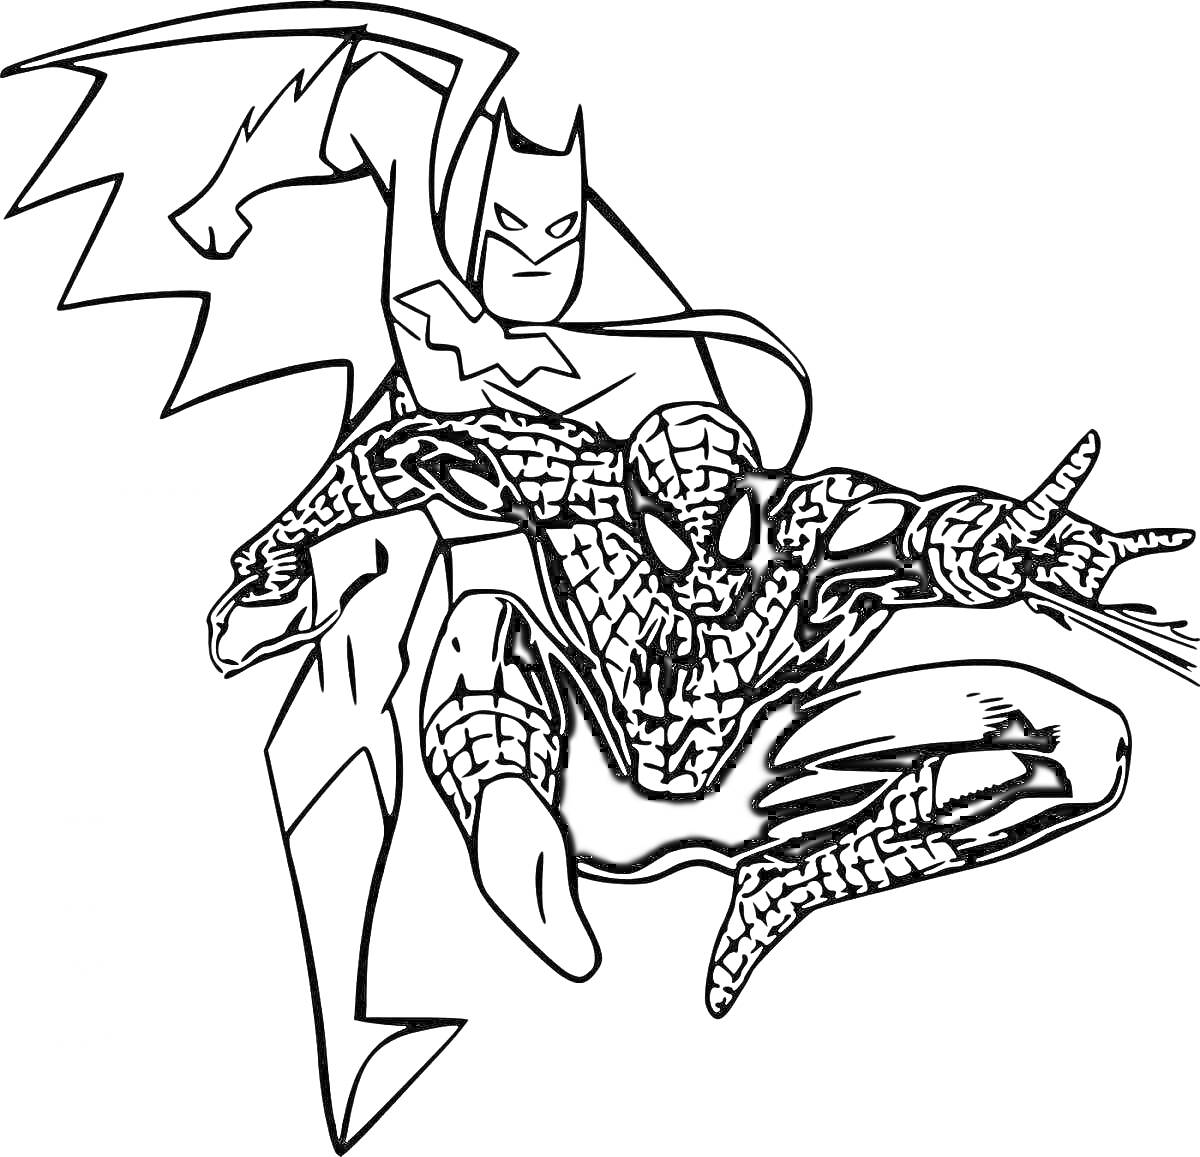 РаскраскаБэтмен и Человек-Паук в боевой стойке